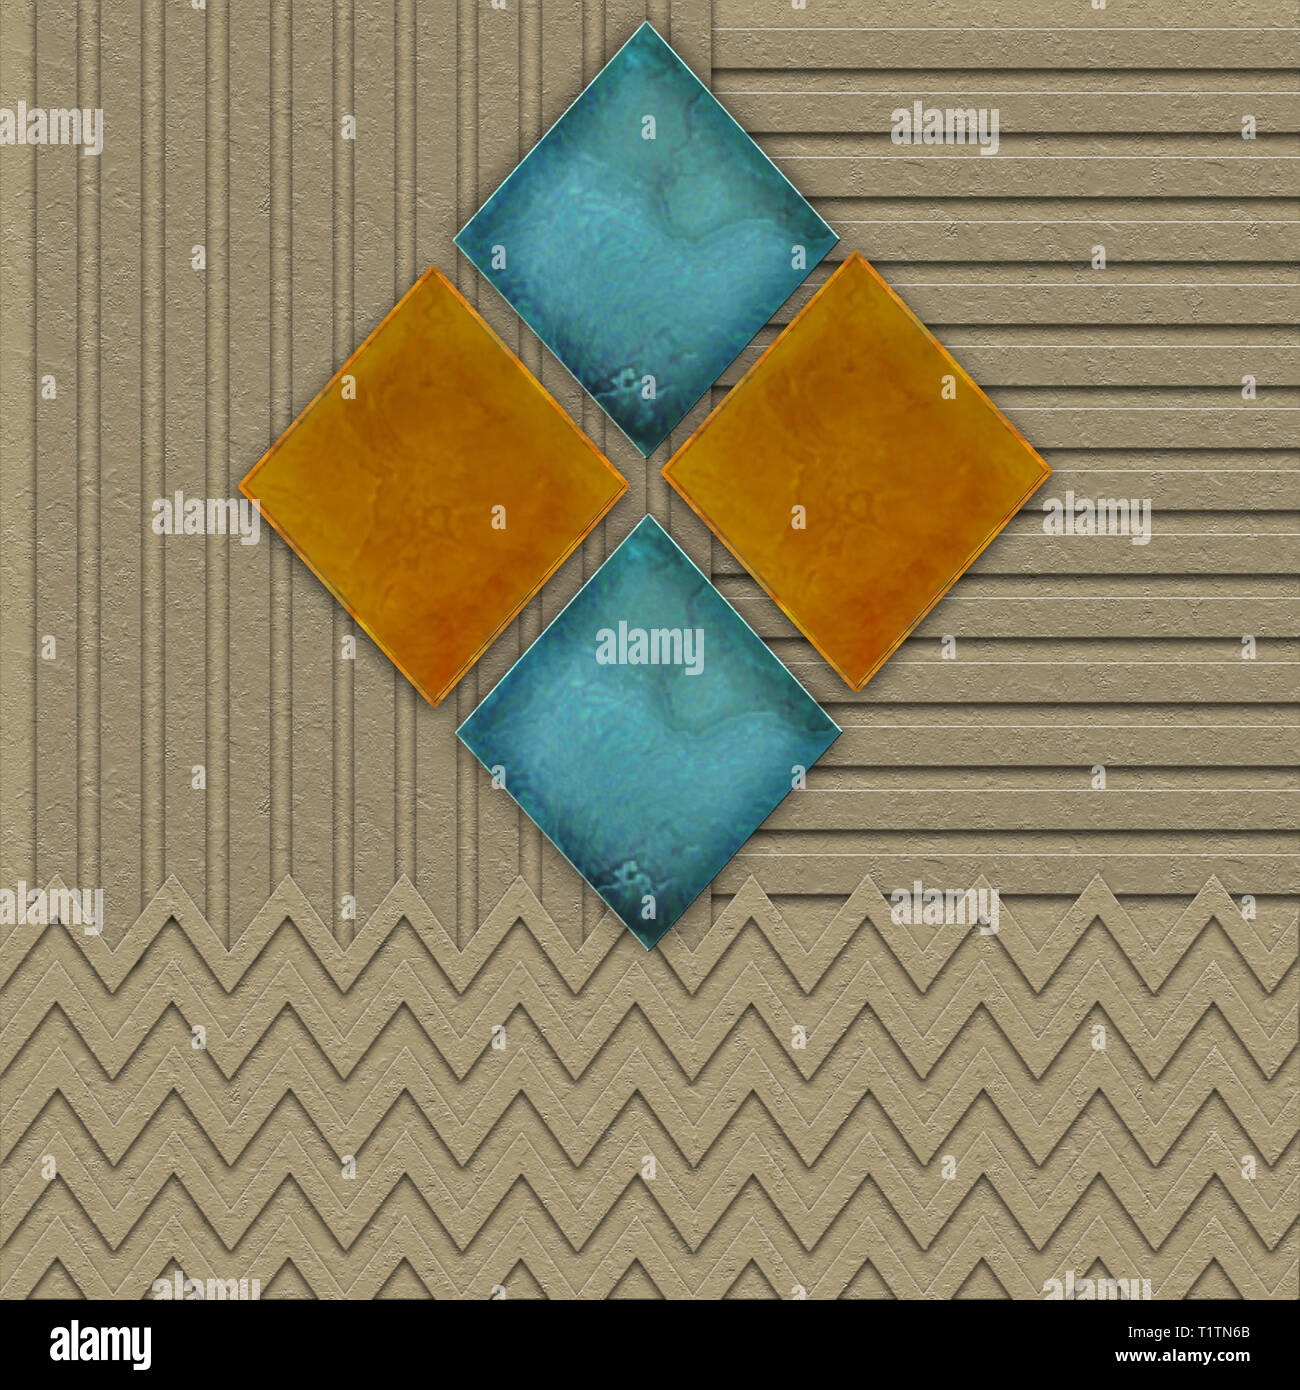 Fond graphique géométrique dans des tons bruns avec des effets de texture. En-comme des losanges en bleu turquoise et orange. Banque D'Images